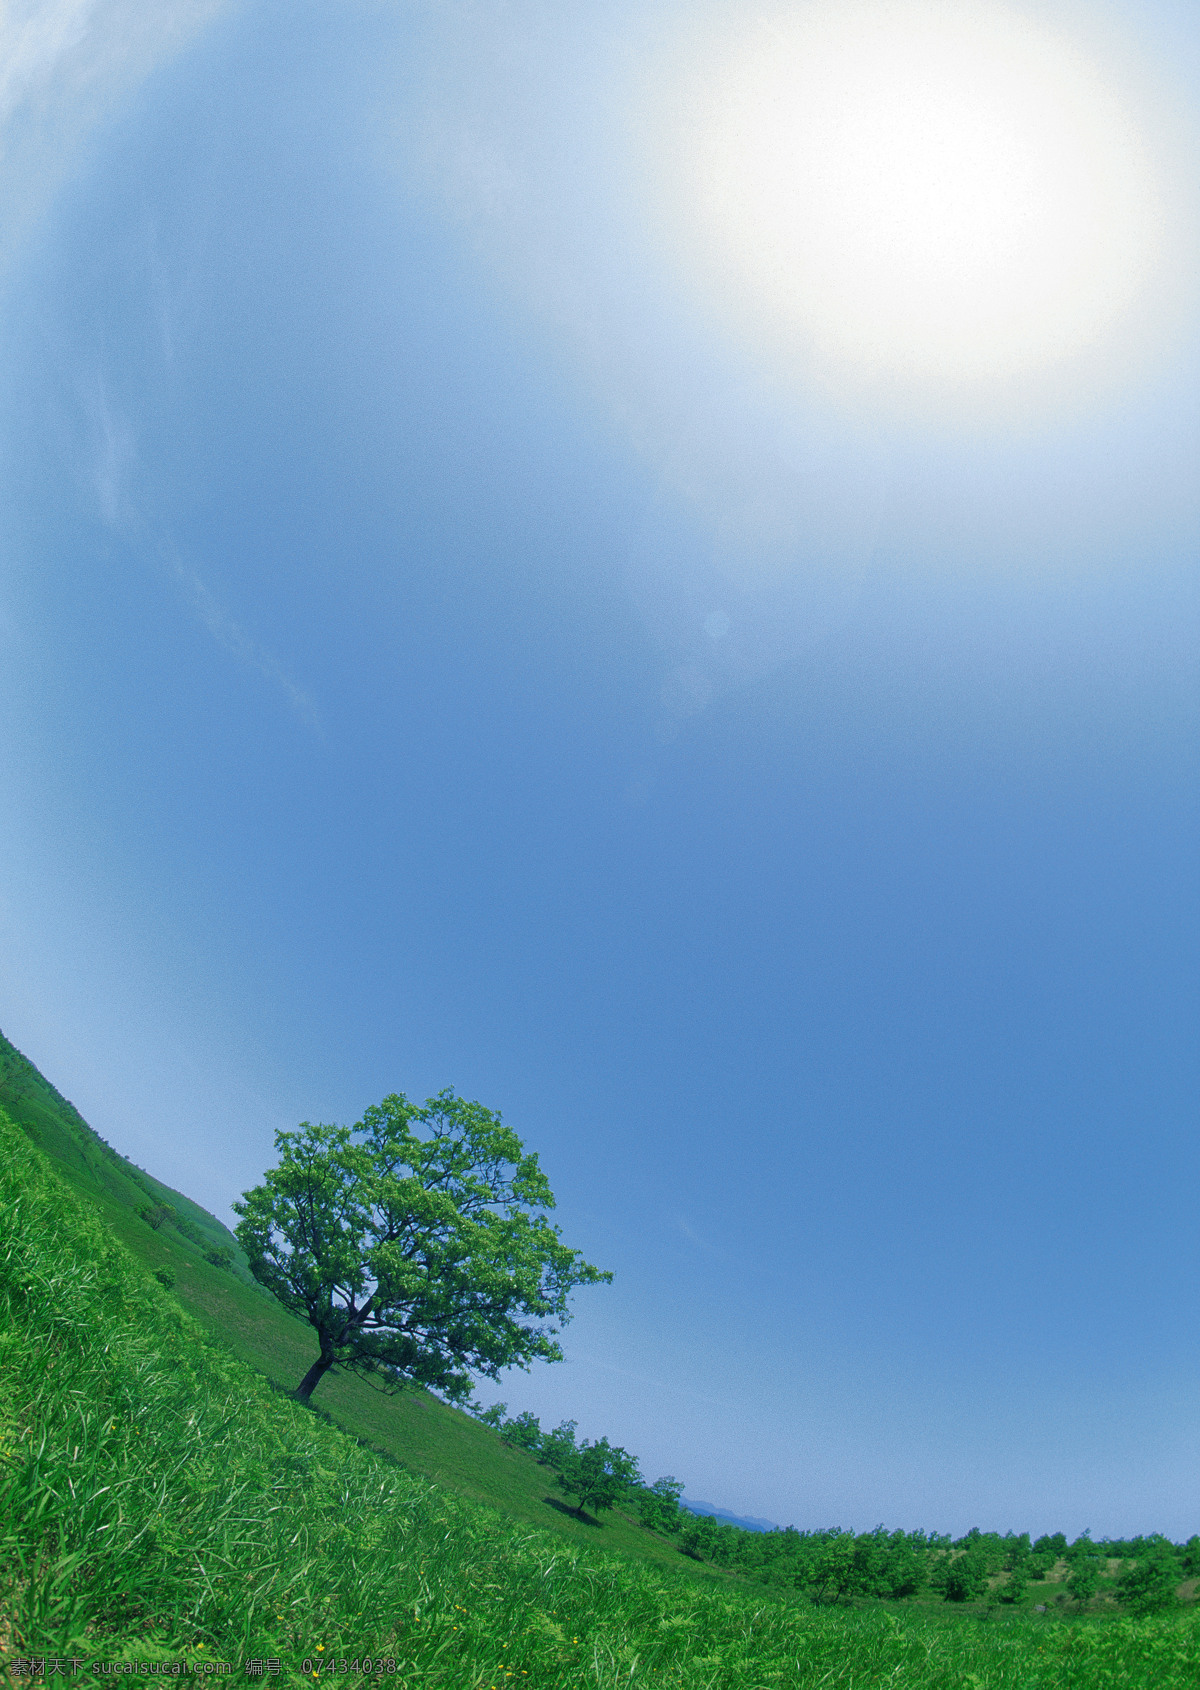 蓝天 白云 绿树 草地 太阳 阳光 阳光照射 野外 绿色大地 树木 大树 风景 图像 相片 照片 照相 风景图库 高清大图 蓝天白云 风景图片